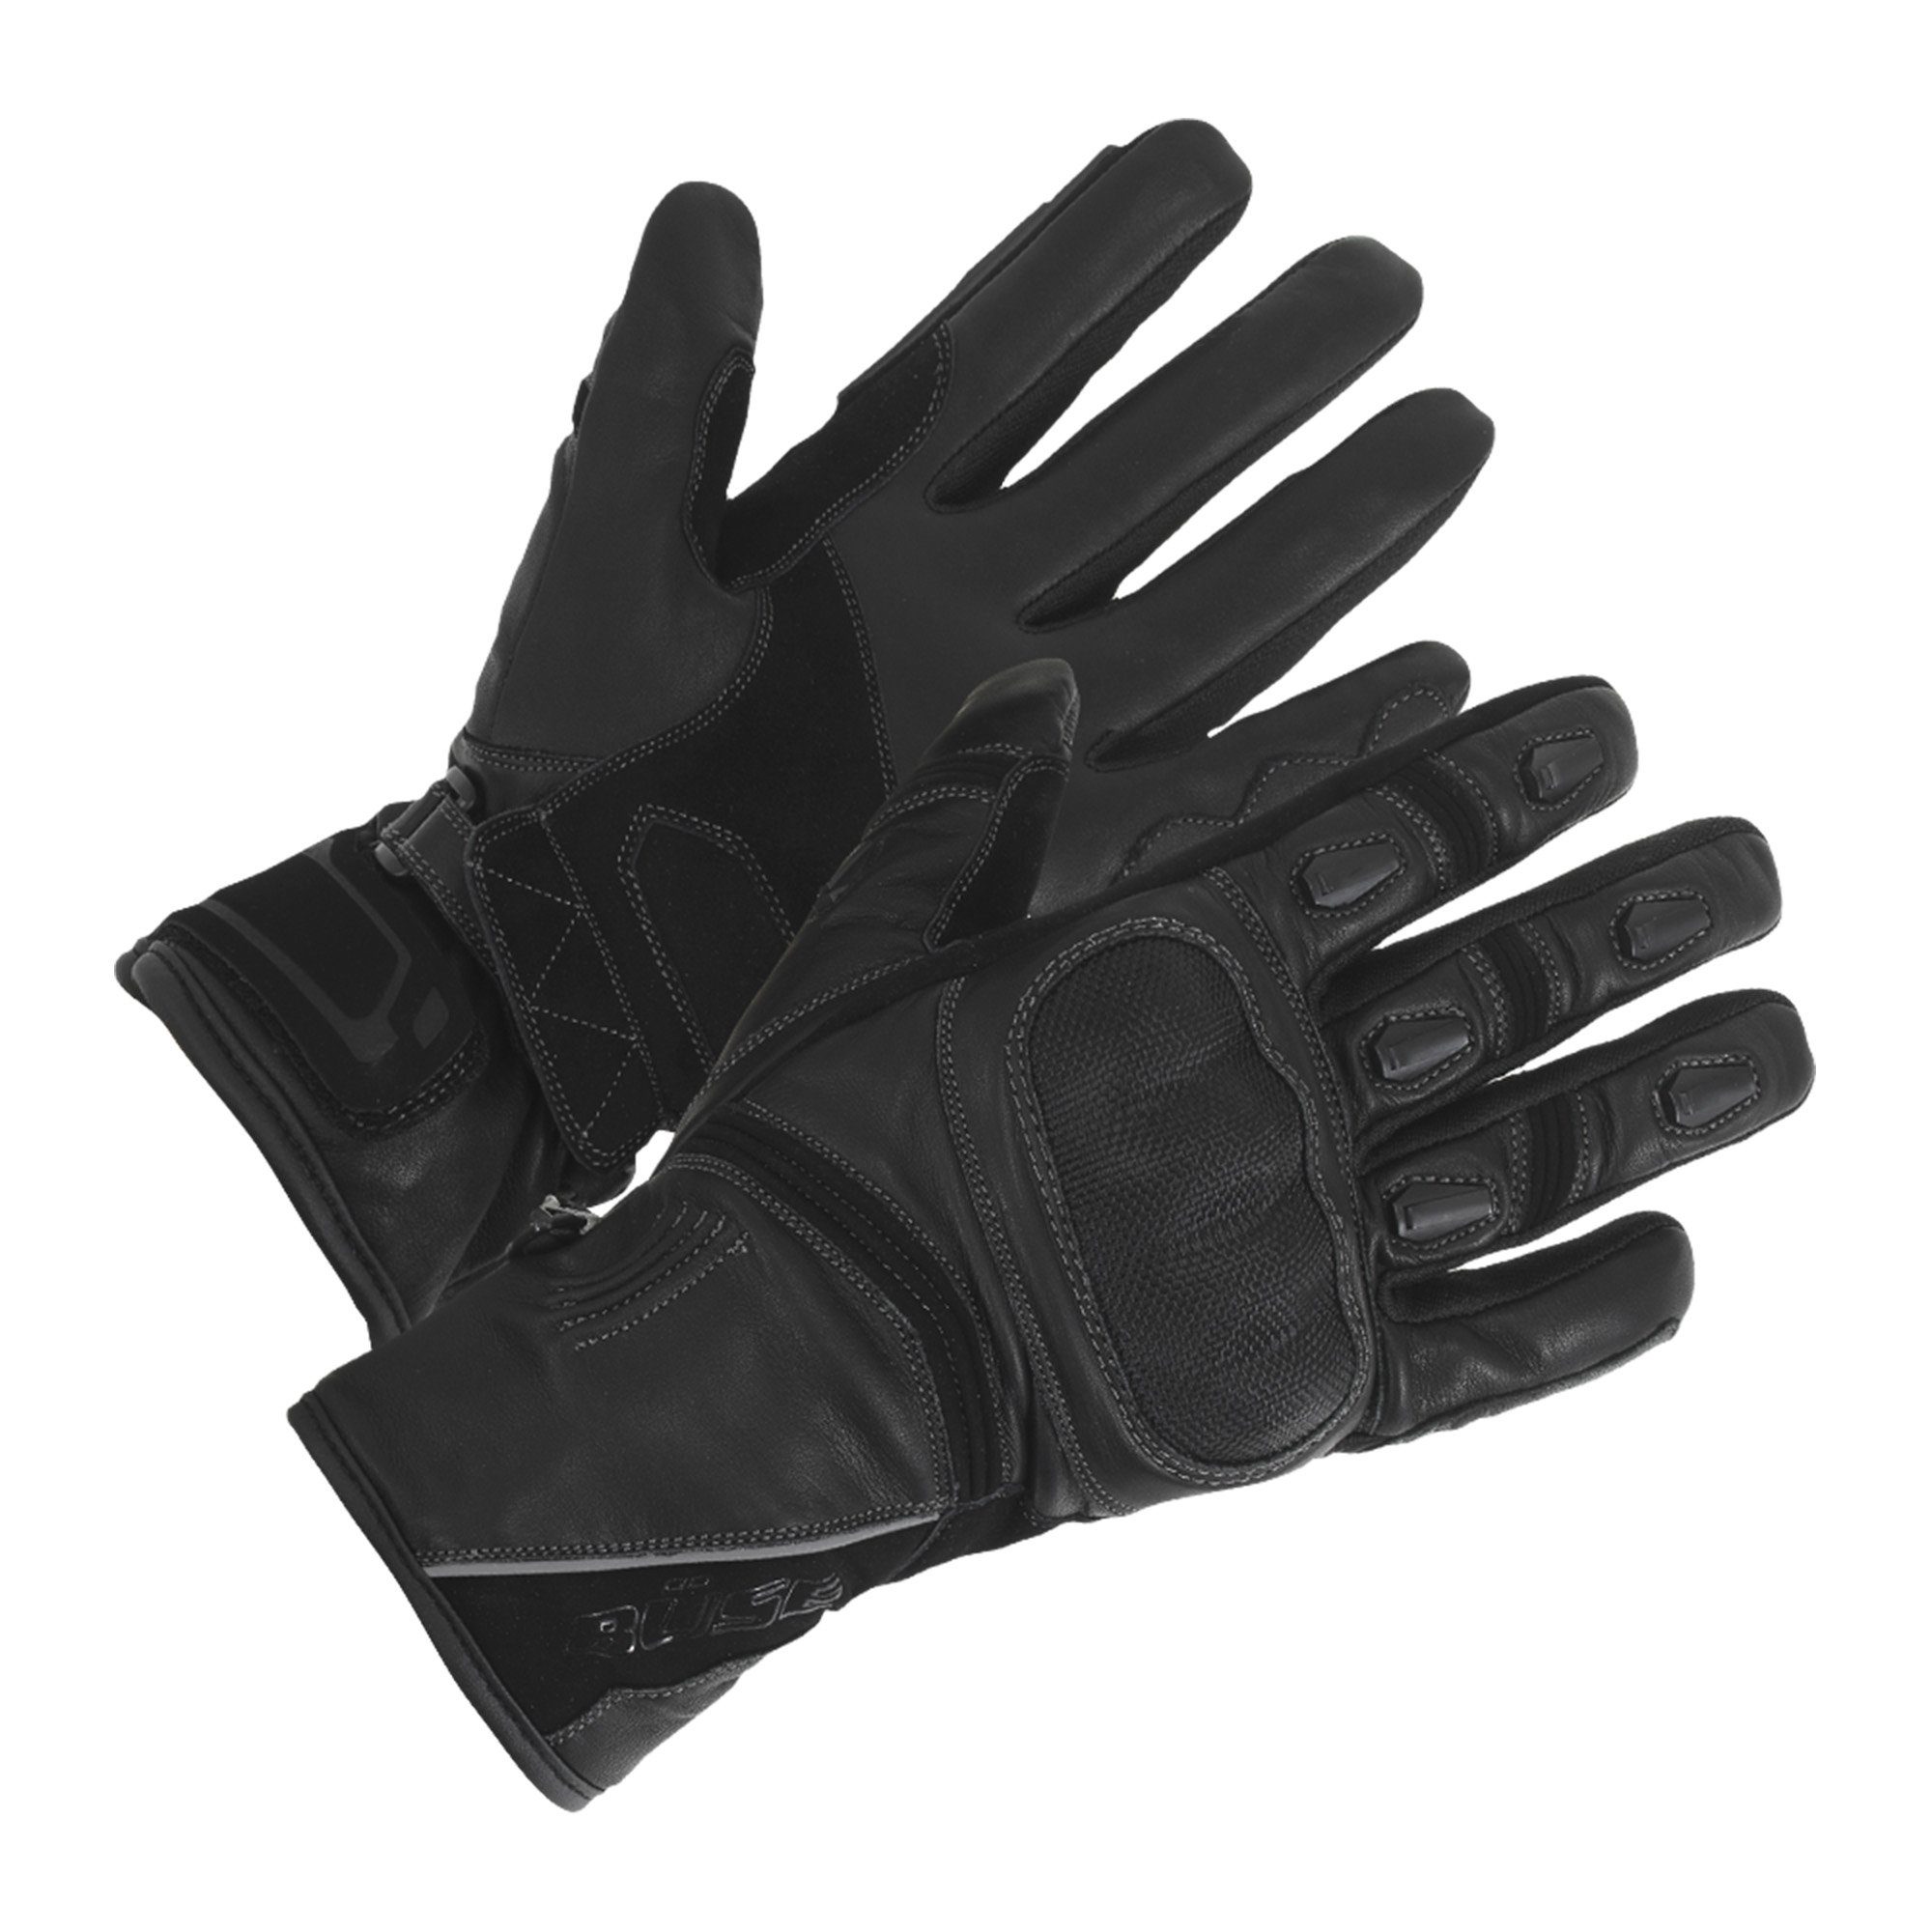 Büse Motorradhandschuhe Büse Ascari Touring Handschuh schwarz wasserdicht winddicht atmungsaktiv mit Protektoren Leder schwarz, rot | Motorradhandschuhe